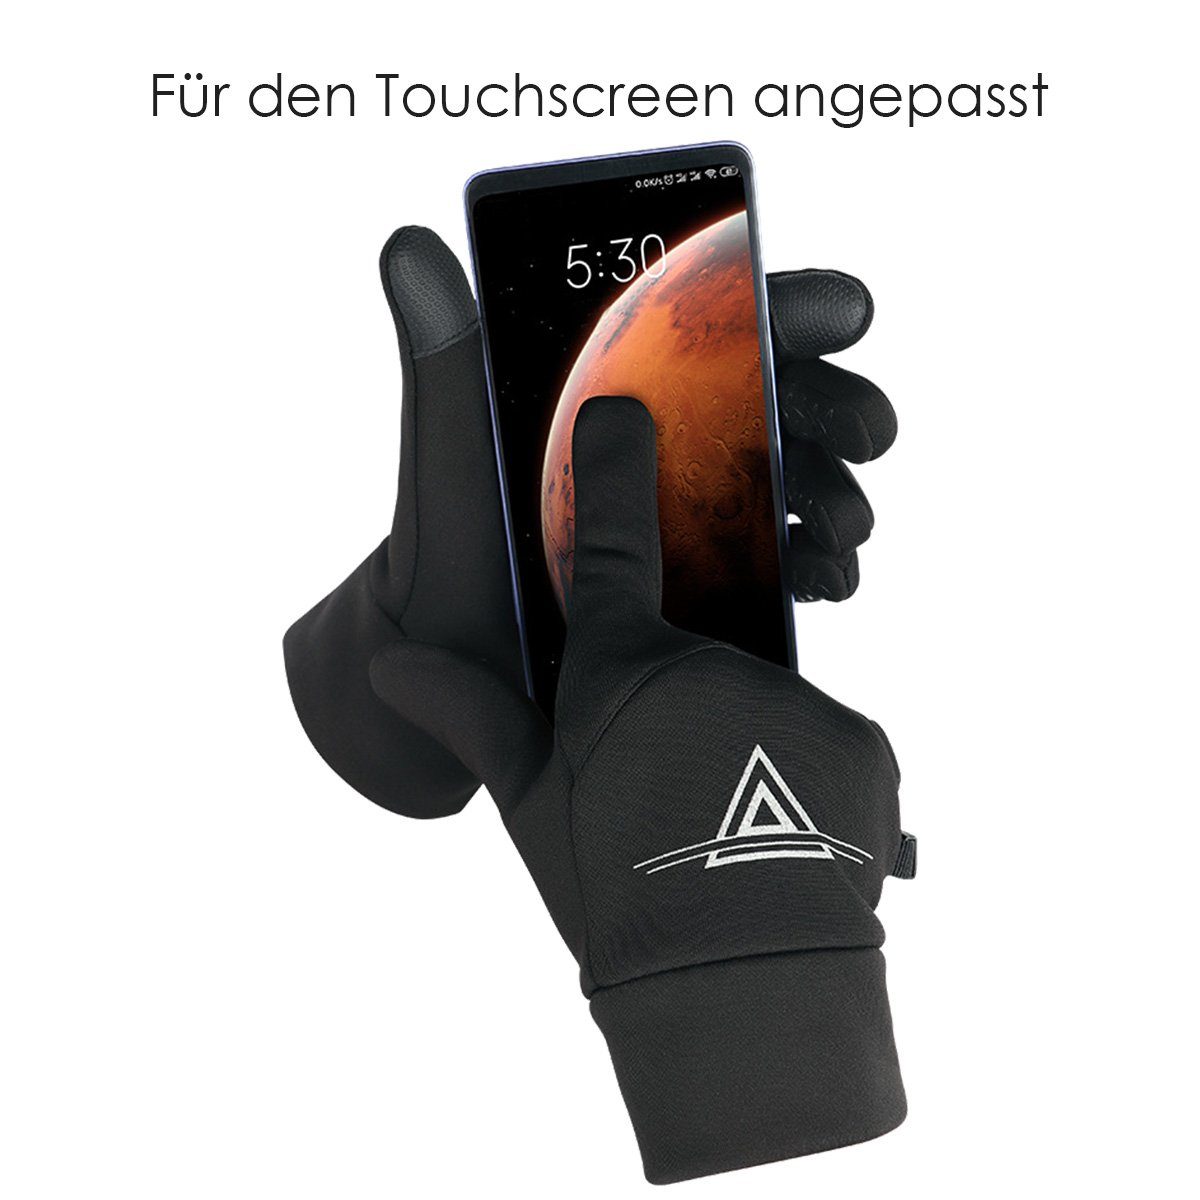 Fahrradhandschuhe warme, MidGard Laufhandschuhe, Sporthandschuhe mit vielseitige Touchscreen